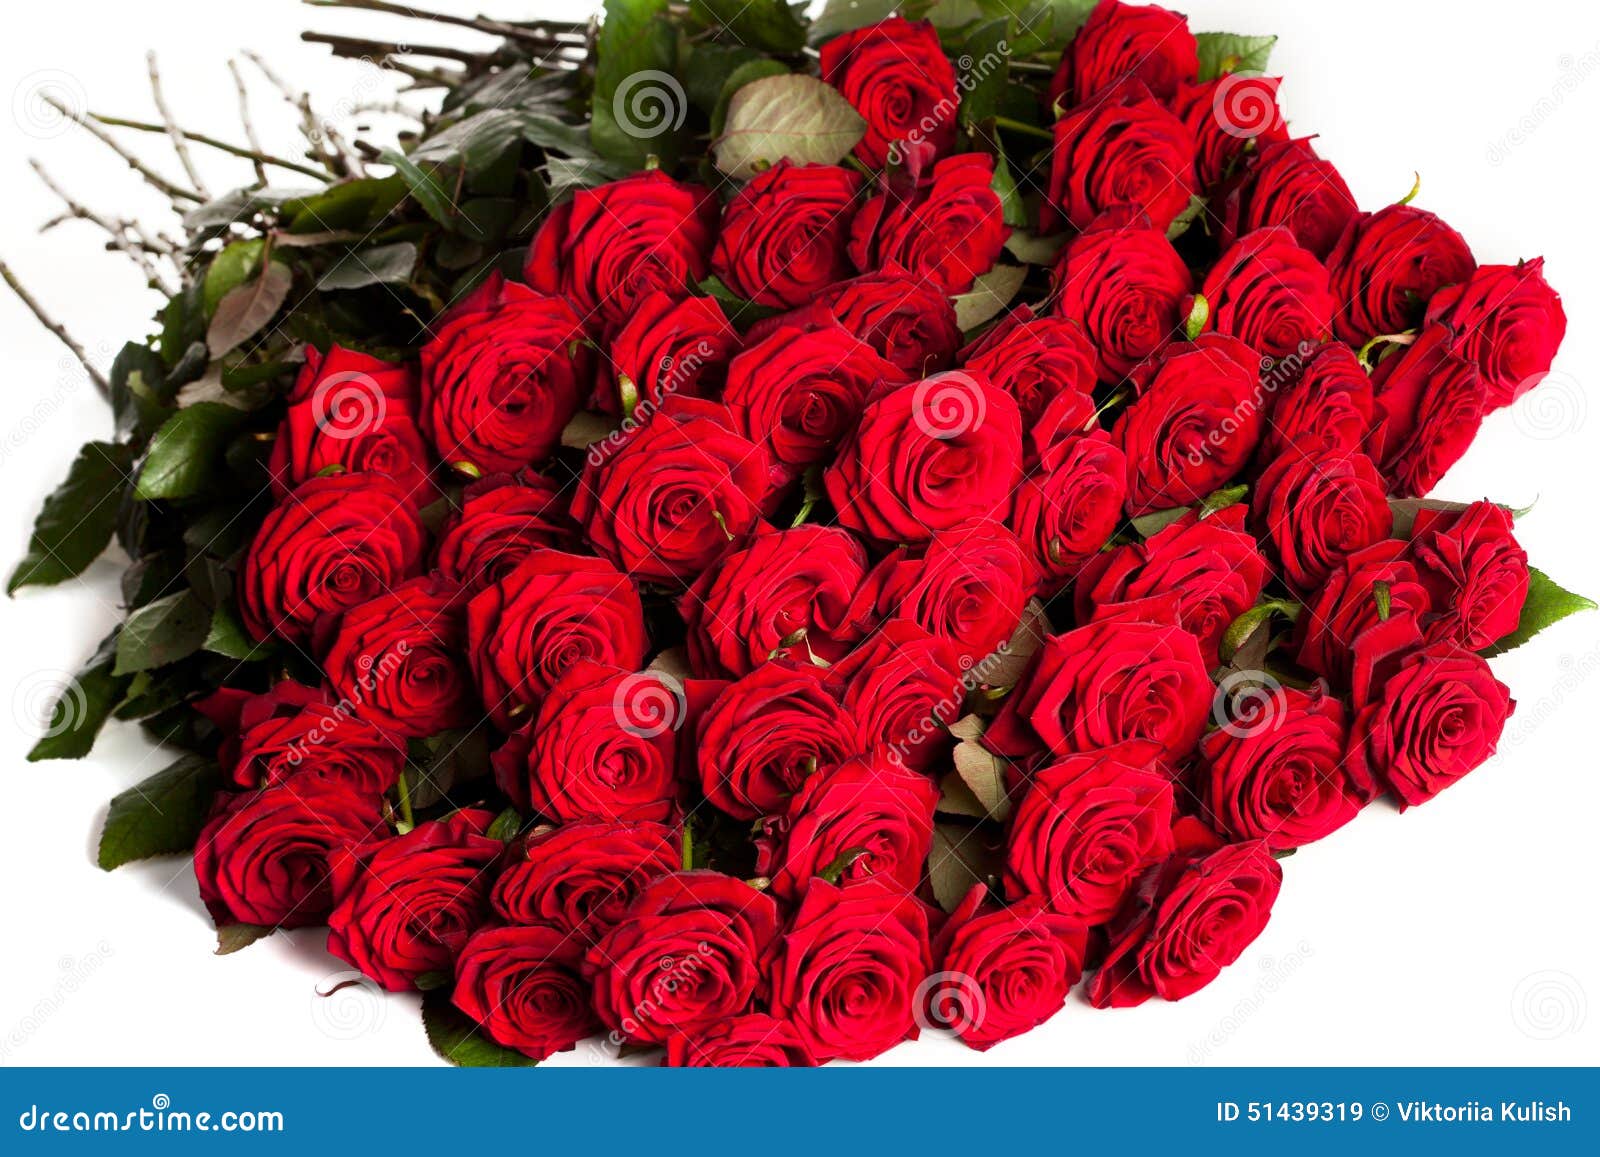 Descarte Hacia fuera Abandonar Muchas rosas rojas imagen de archivo. Imagen de travieso - 51439319